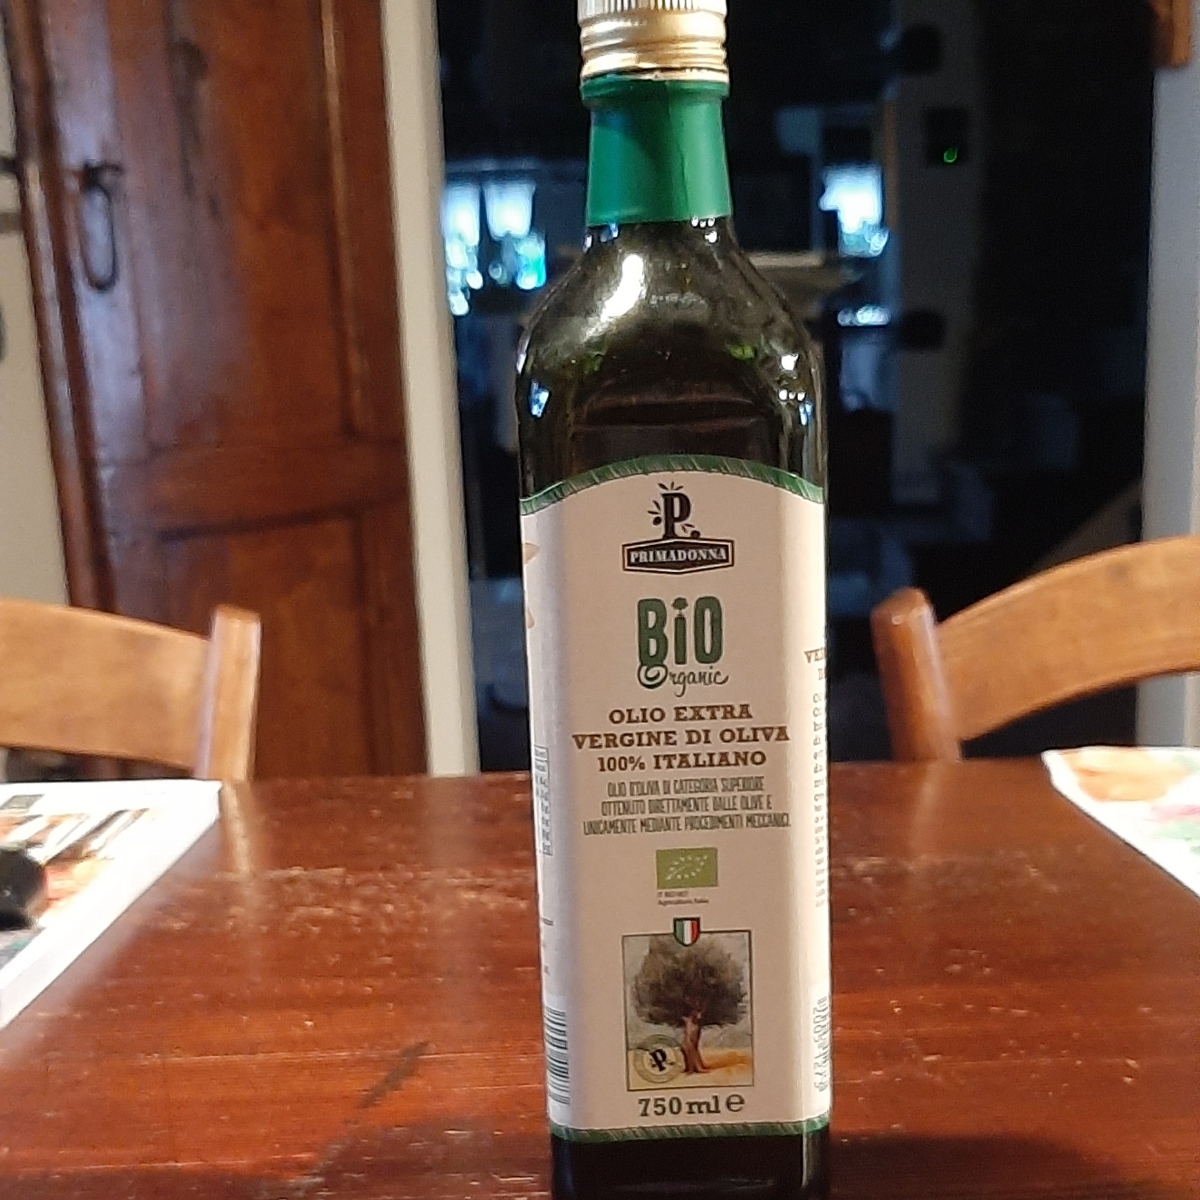 Primadonna Bio organic olio extra vergine d'olive Review | abillion